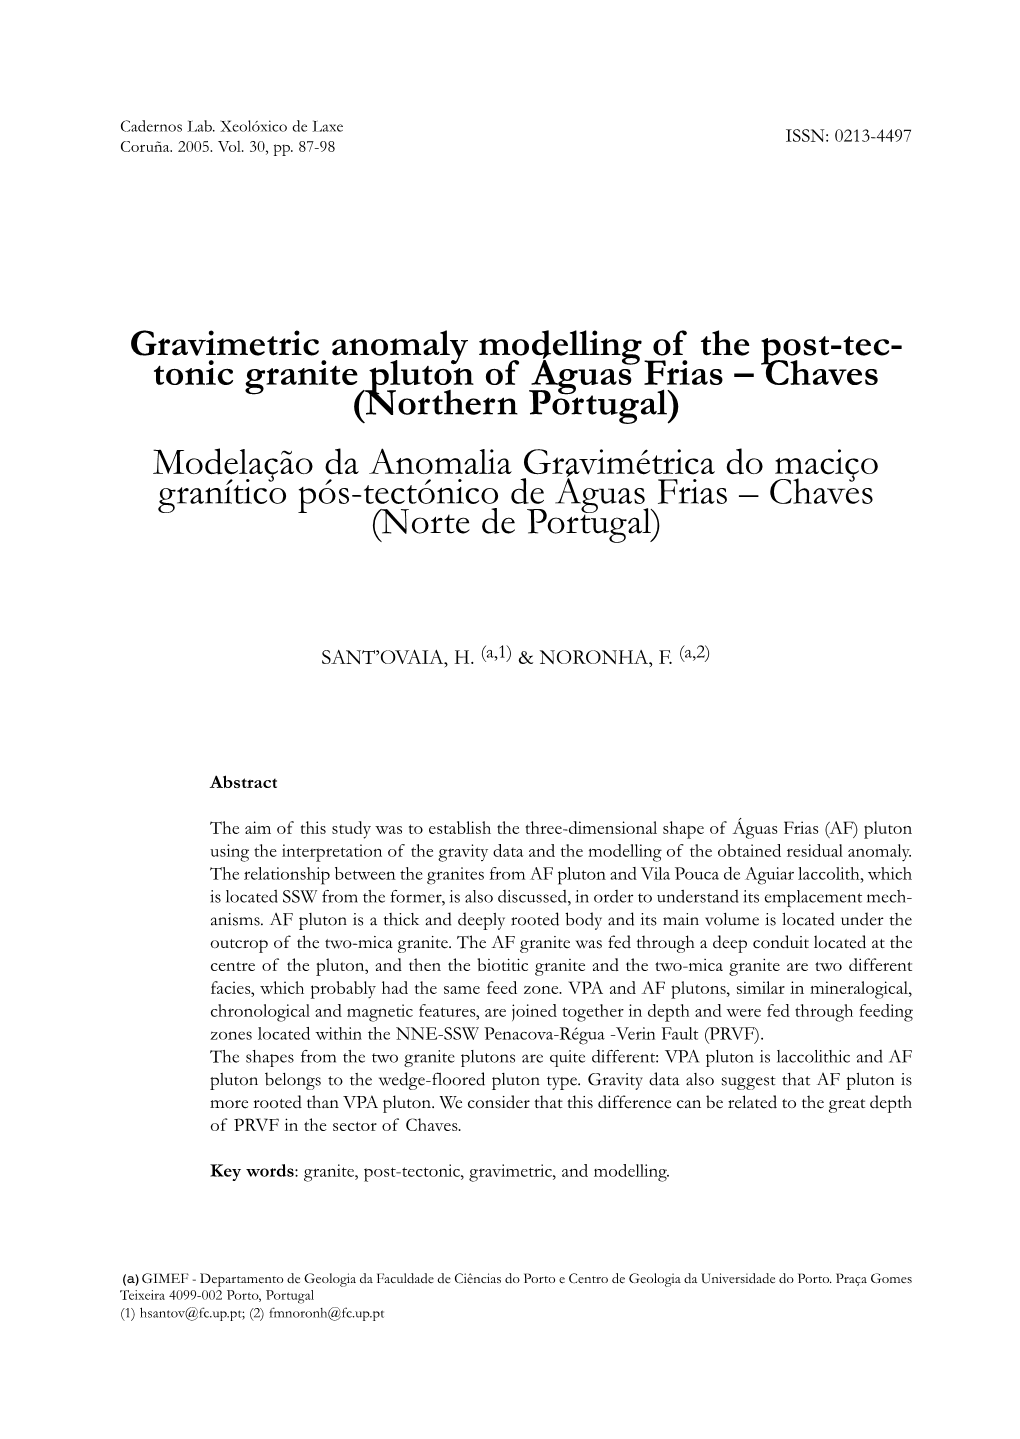 Northern Portugal) Modelação Da Anomalia Gravimétrica Do Maciço Granítico Pós-Tectónico De Águas Frias – Chaves (Norte De Portugal)